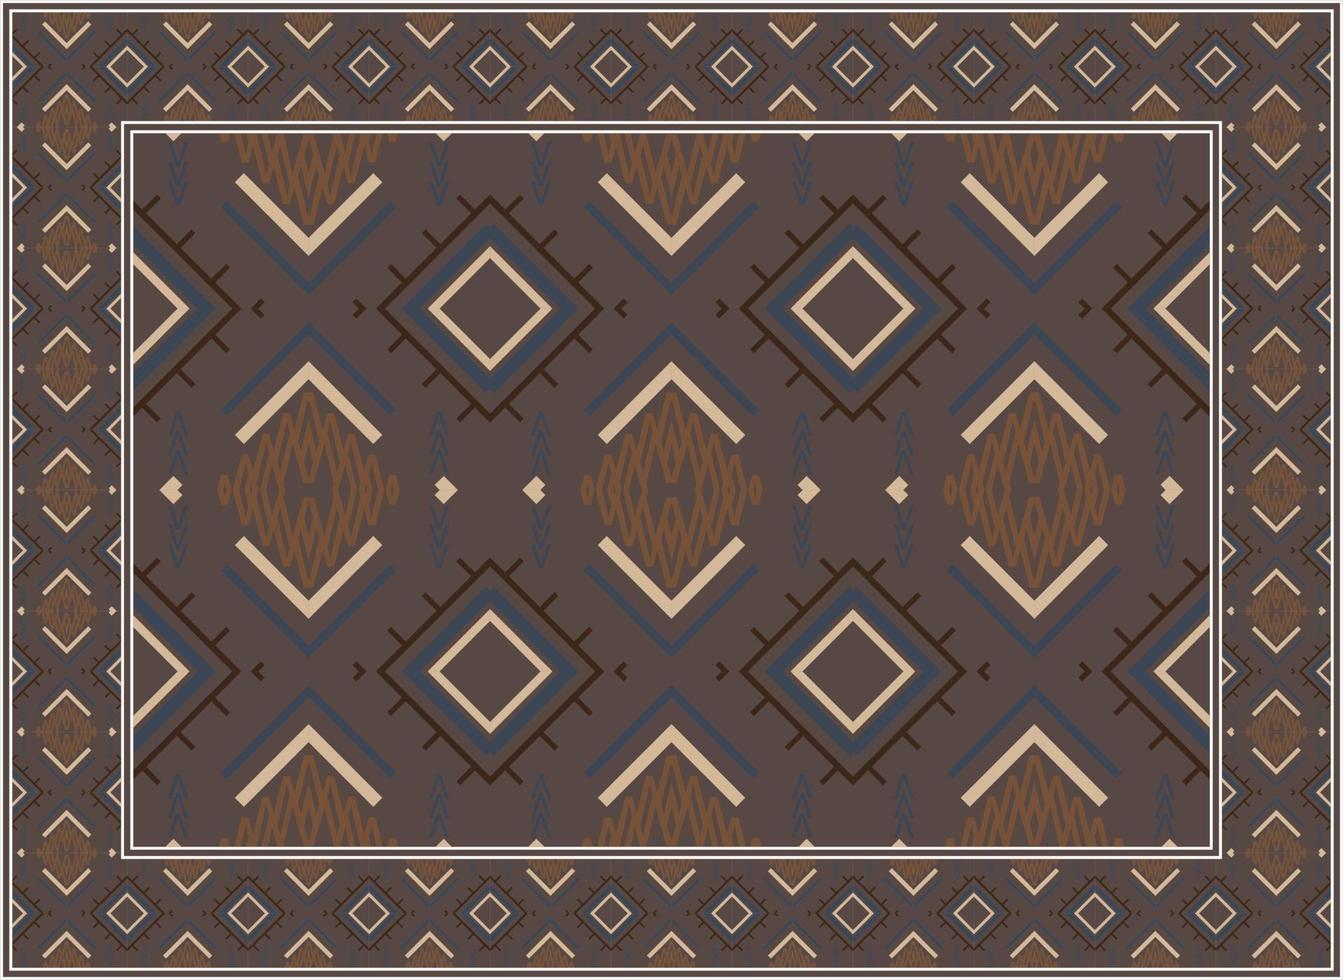 Antiguidade persa tapete, motivo étnico desatado padronizar moderno persa tapete, africano étnico asteca estilo Projeto para impressão tecido tapetes, toalhas, lenços, lenços tapete, vetor